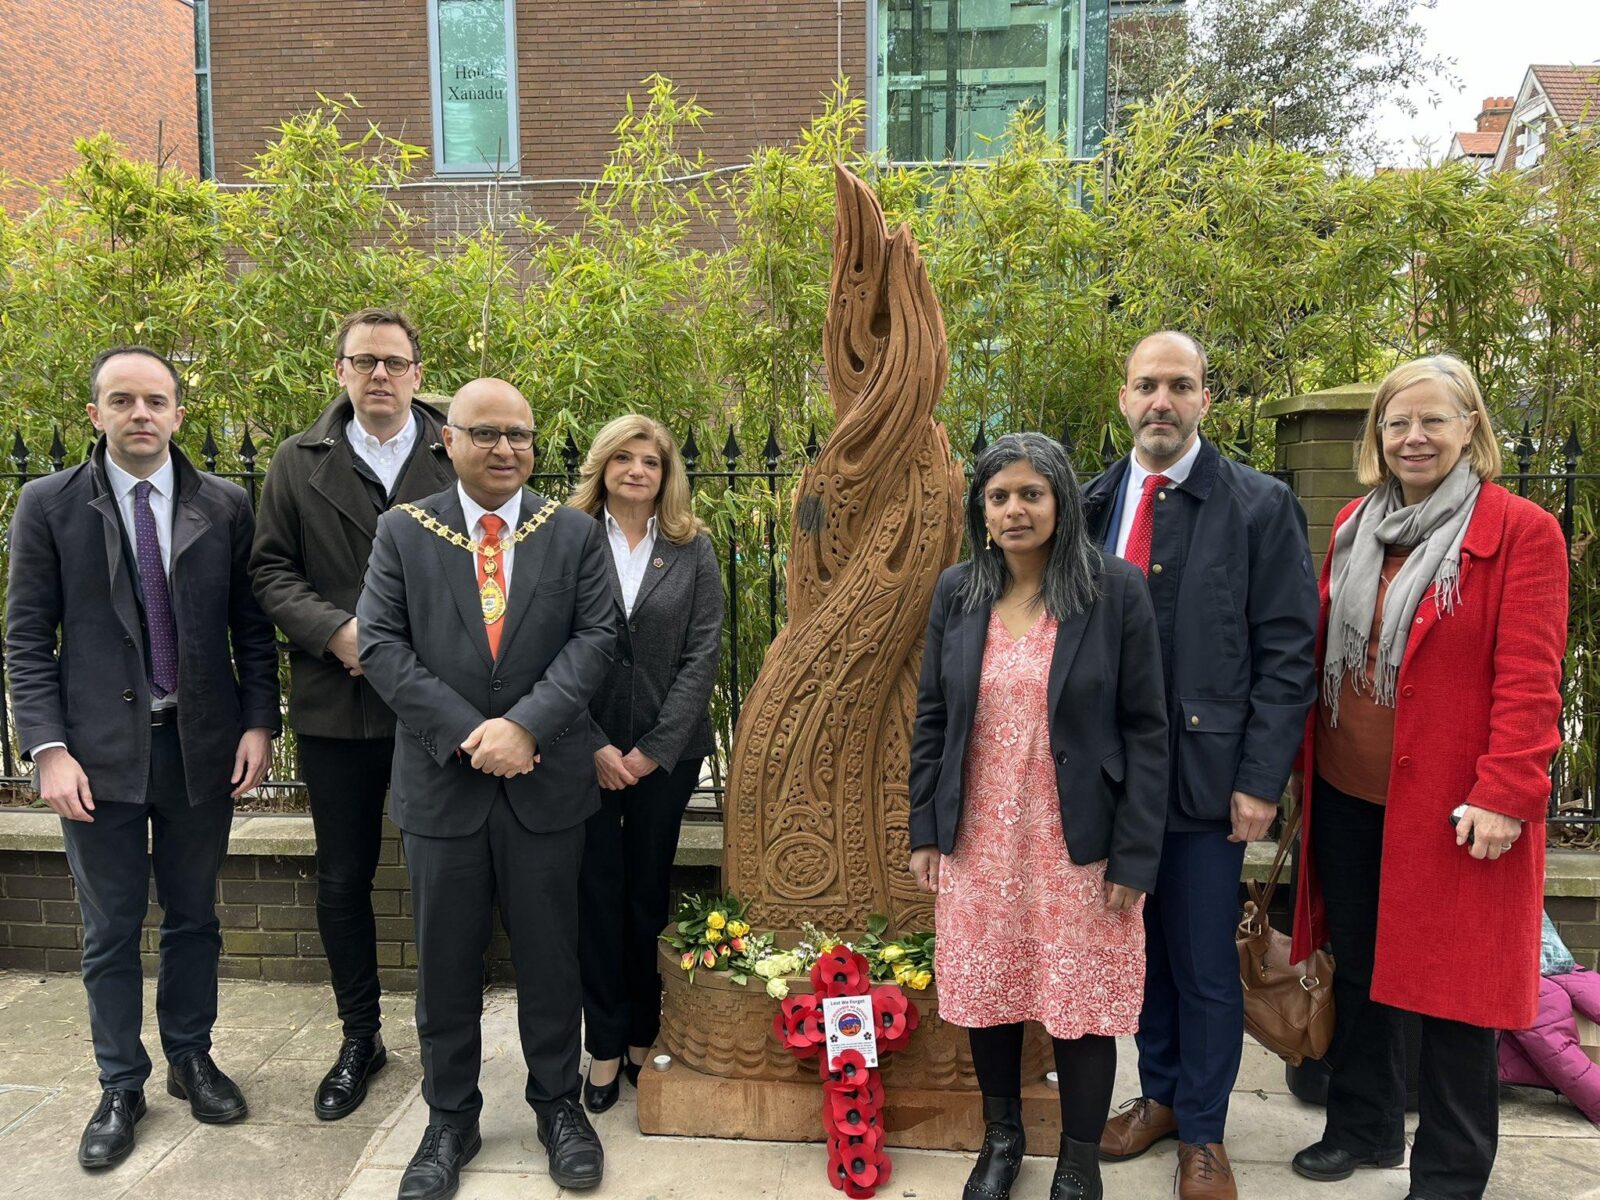 Rupa Huq MP commemorates the Armenian Genocide at new memorial in Ealing